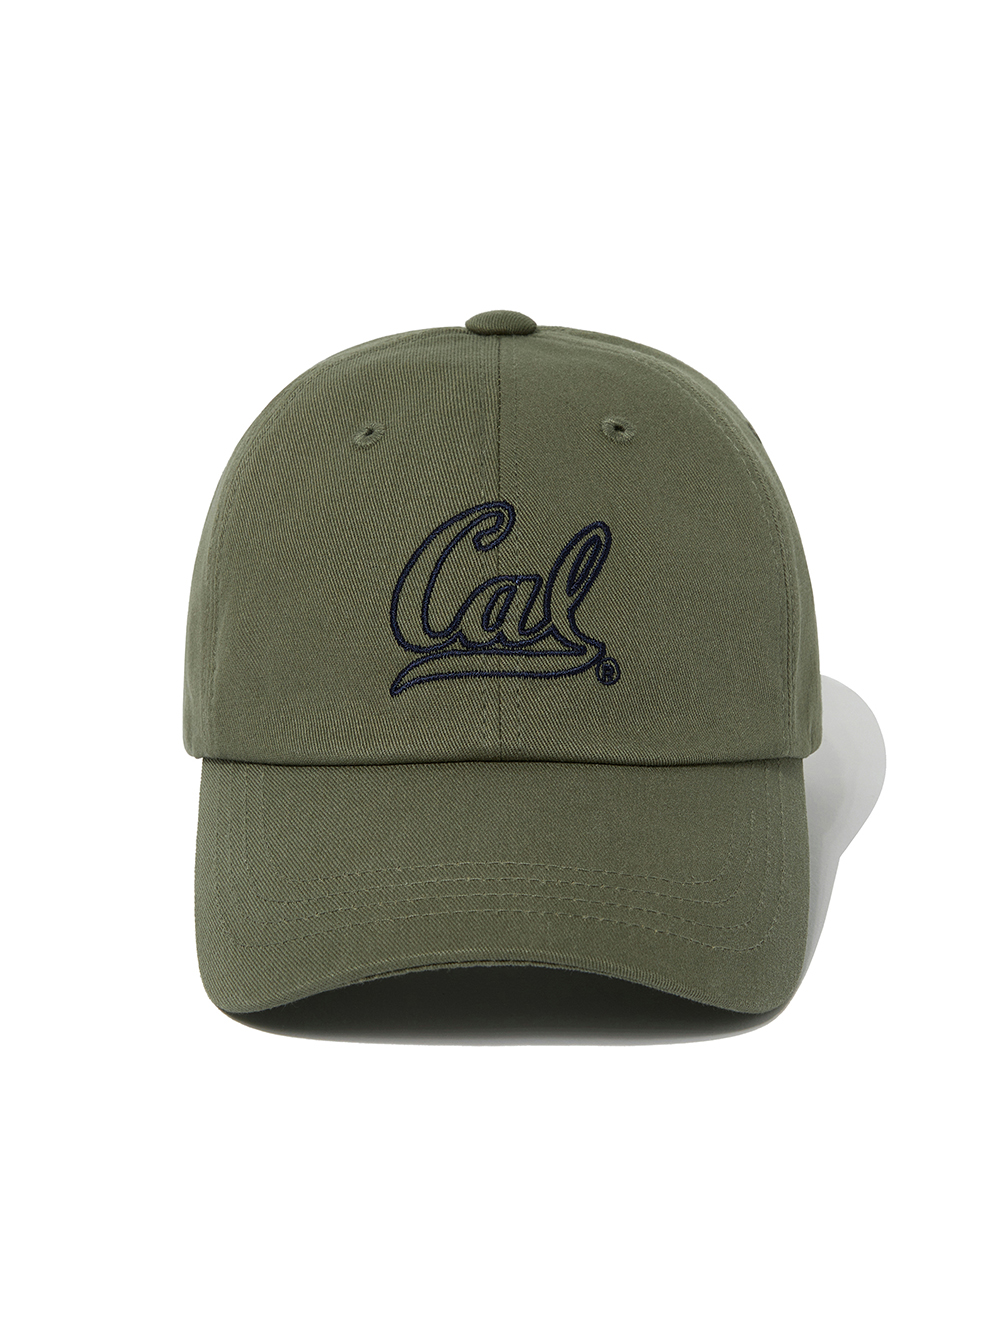 OUTLINE STITCH CAL LOGO CAP [KHAKI]